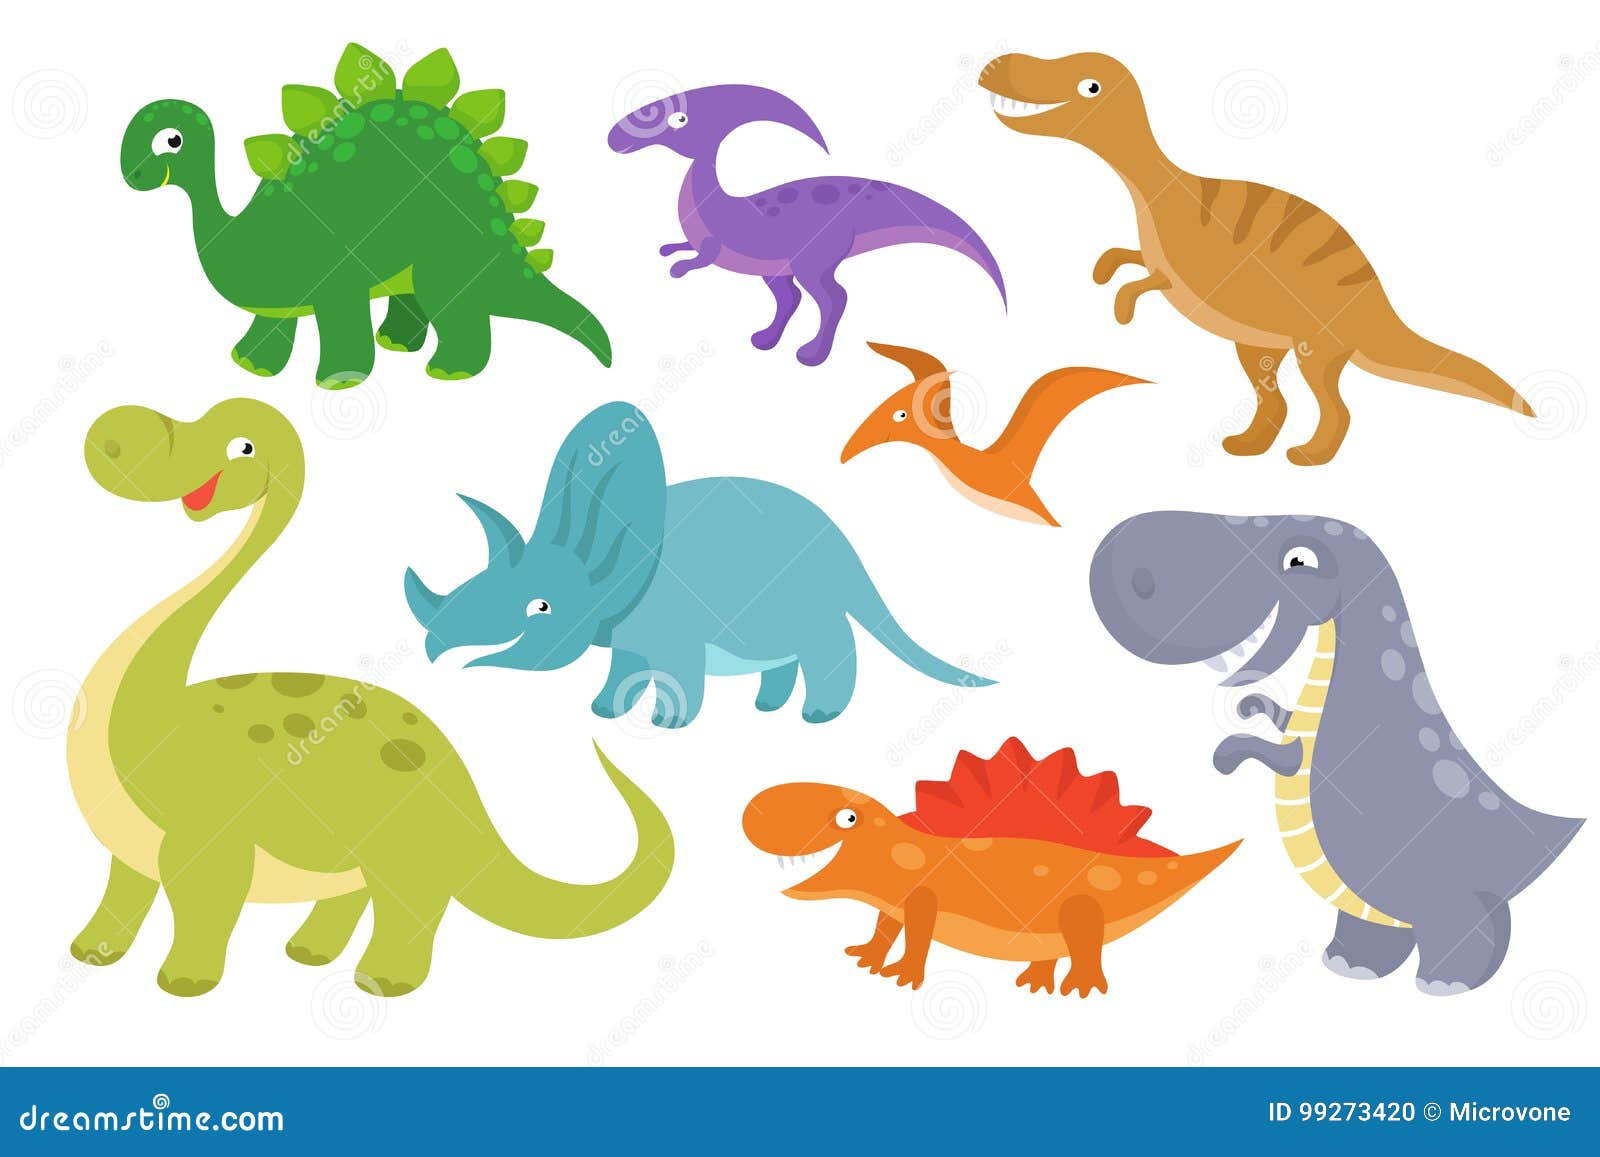 Dinosaurs Vector Stock Illustrations – 14,298 Dinosaurs Vector Stock  Illustrations, Vectors & Clipart - Dreamstime